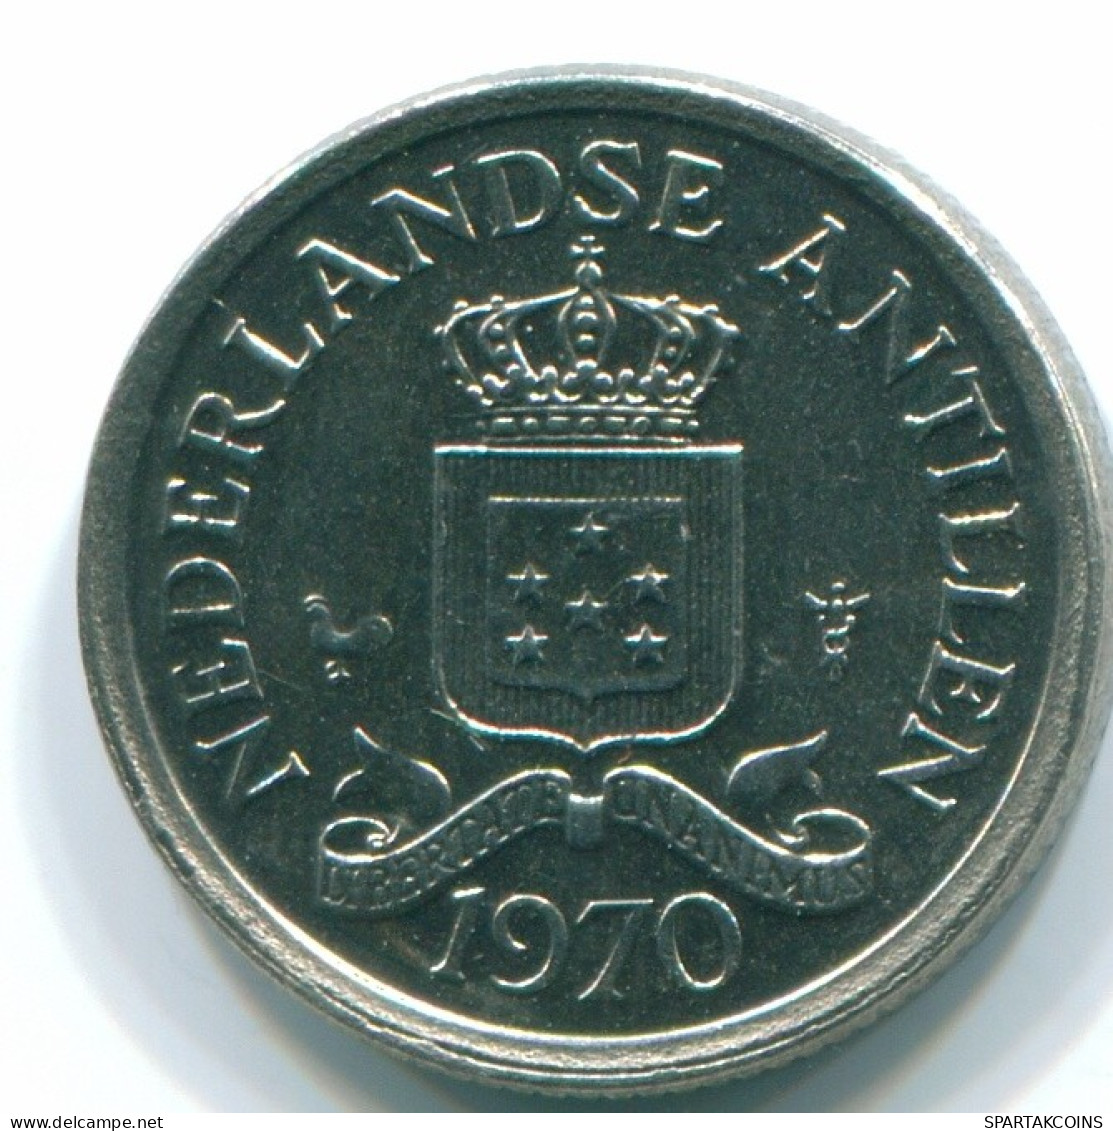 10 CENTS 1970 NIEDERLÄNDISCHE ANTILLEN Nickel Koloniale Münze #S13383.D.A - Antilles Néerlandaises